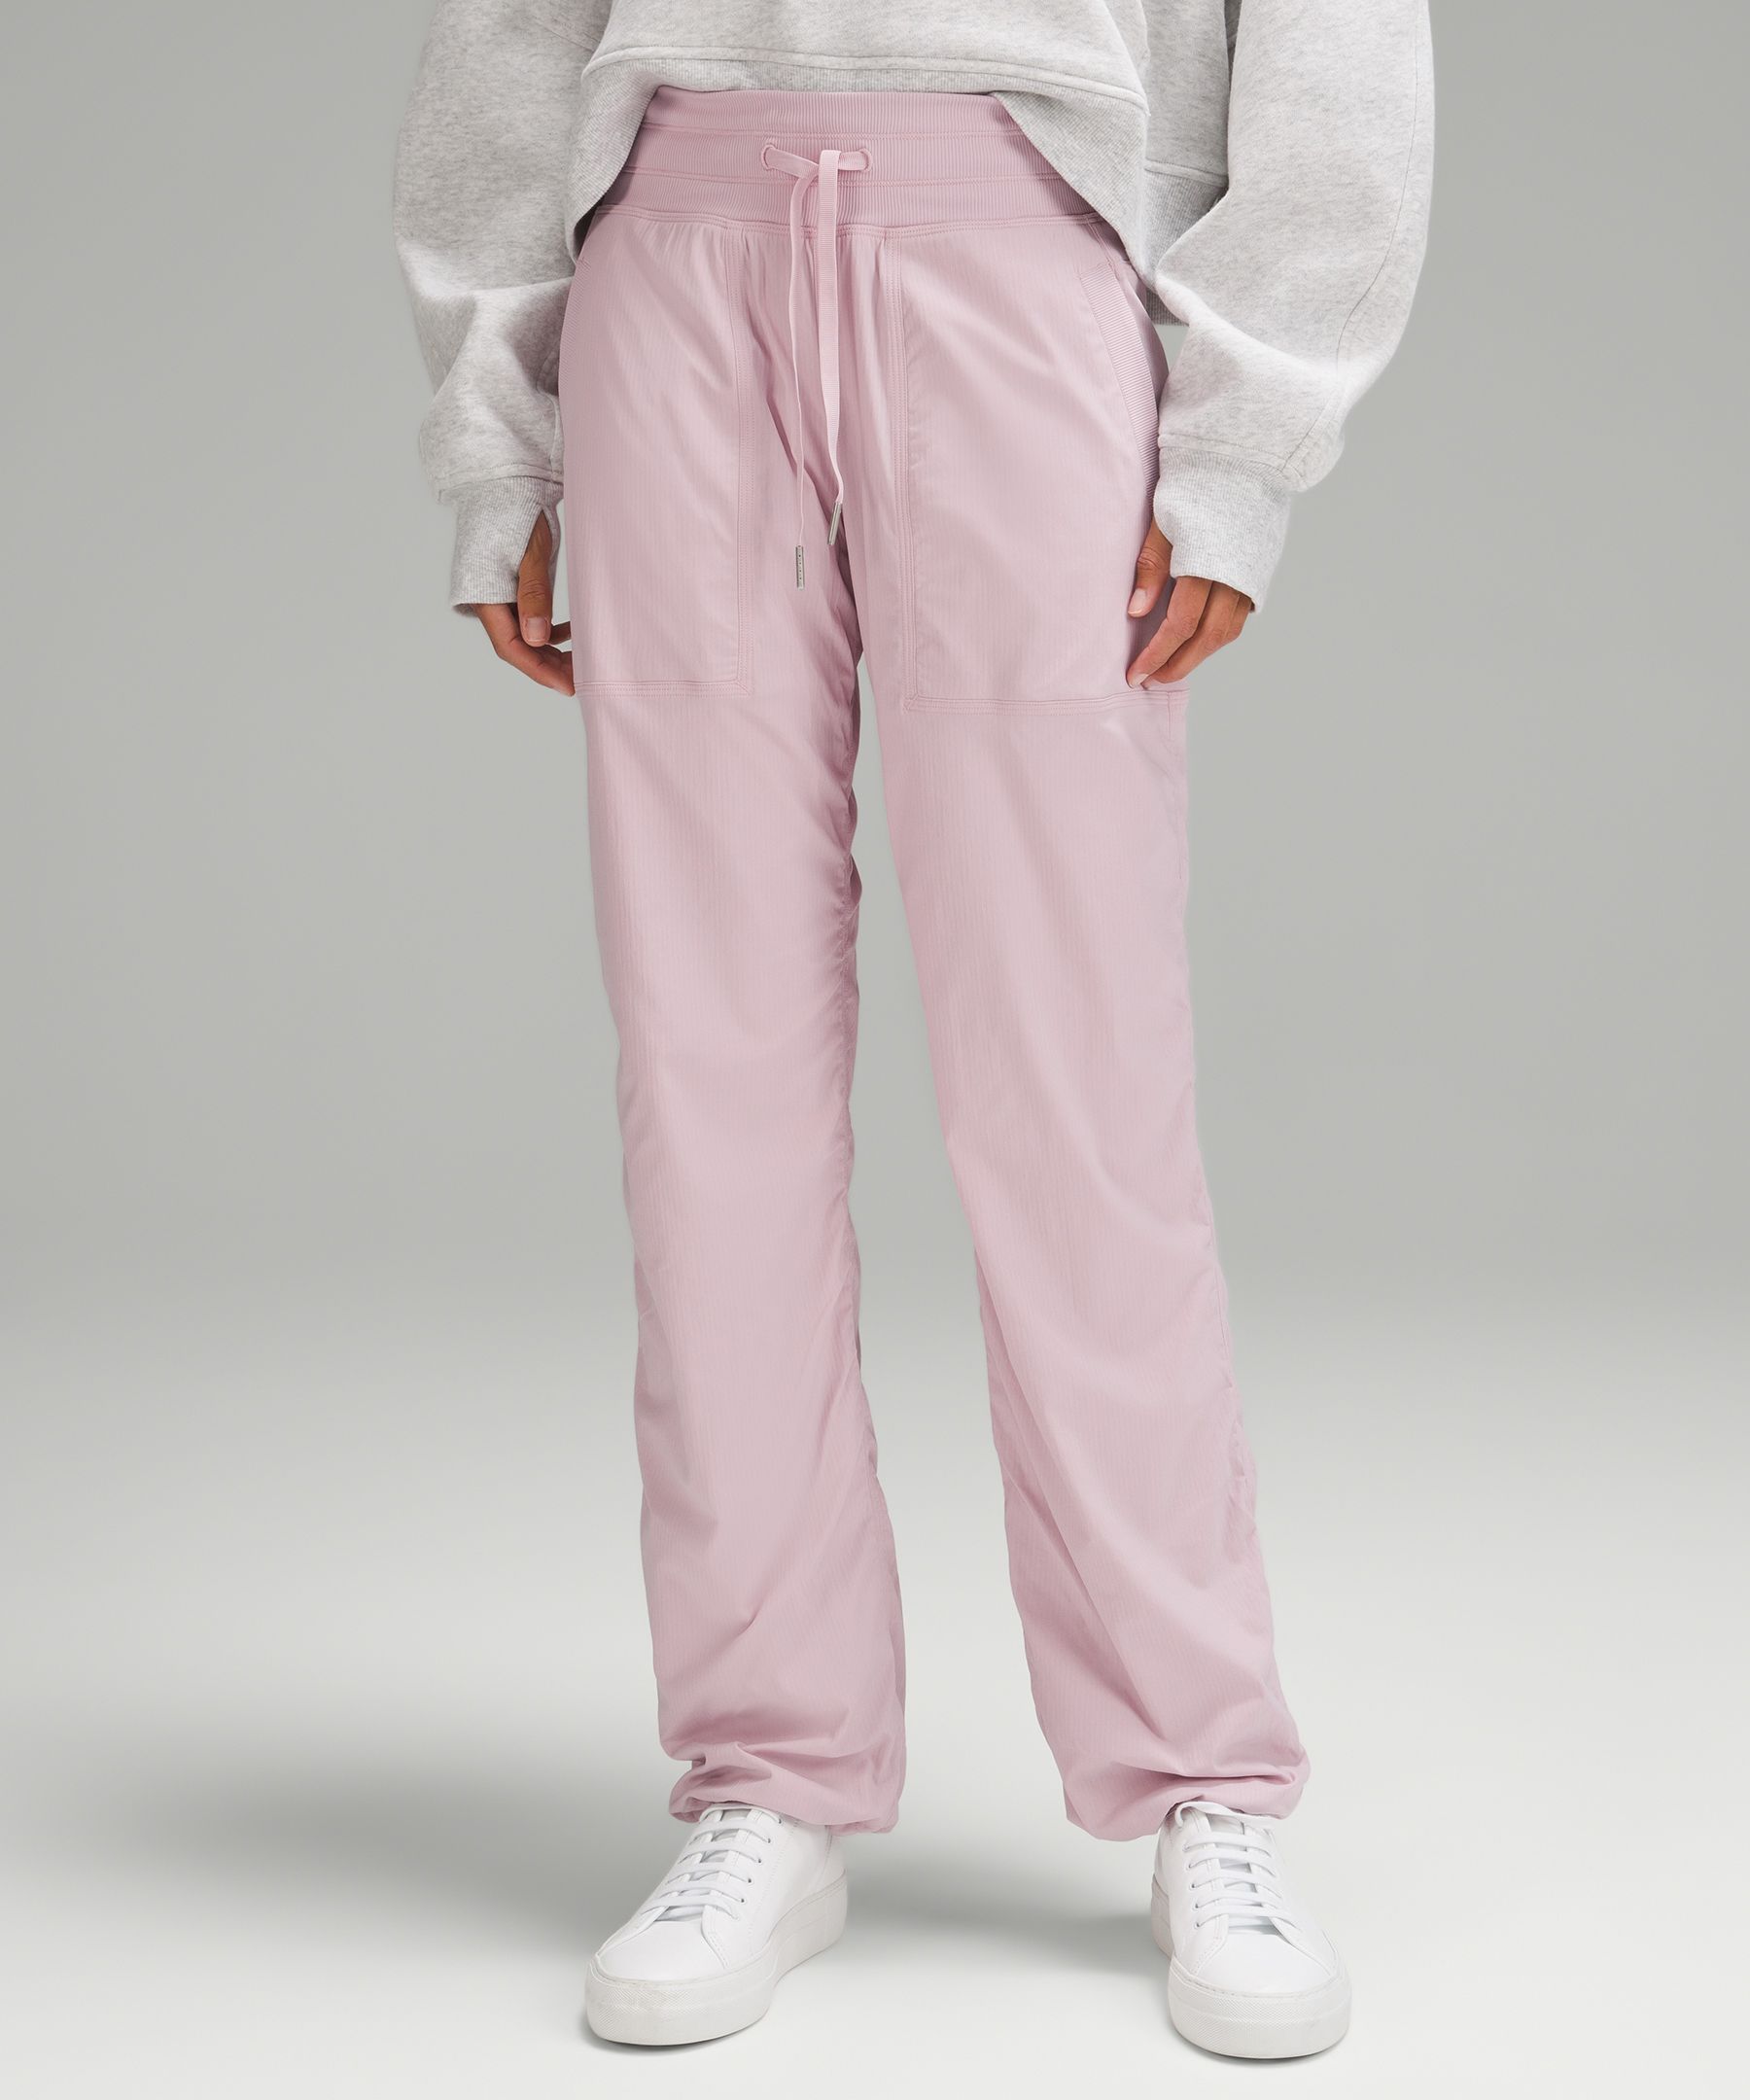 lululemon - Dance Studio Mid-rise Full-length Pants on Designer Wardrobe